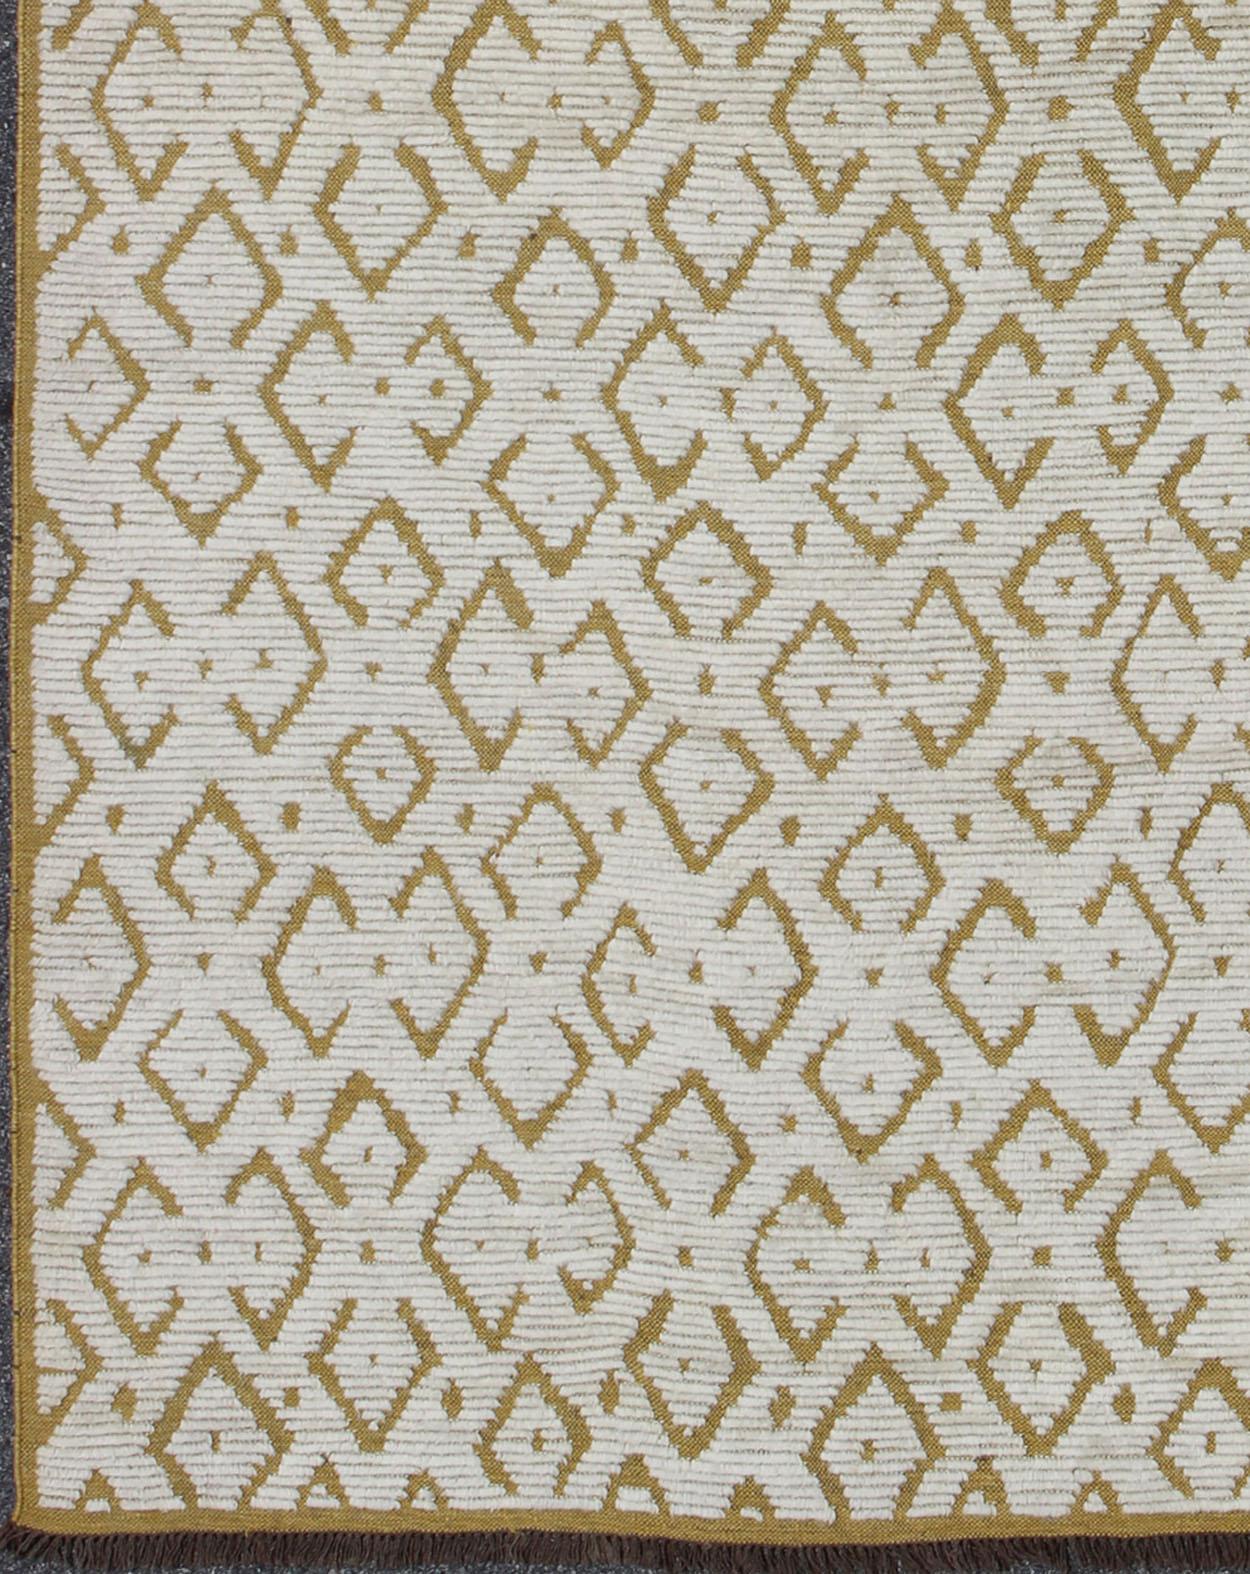 Tribal Grand tapis marocain à motif côtelé jaune, or et blanc, pour les intérieurs modernes en vente